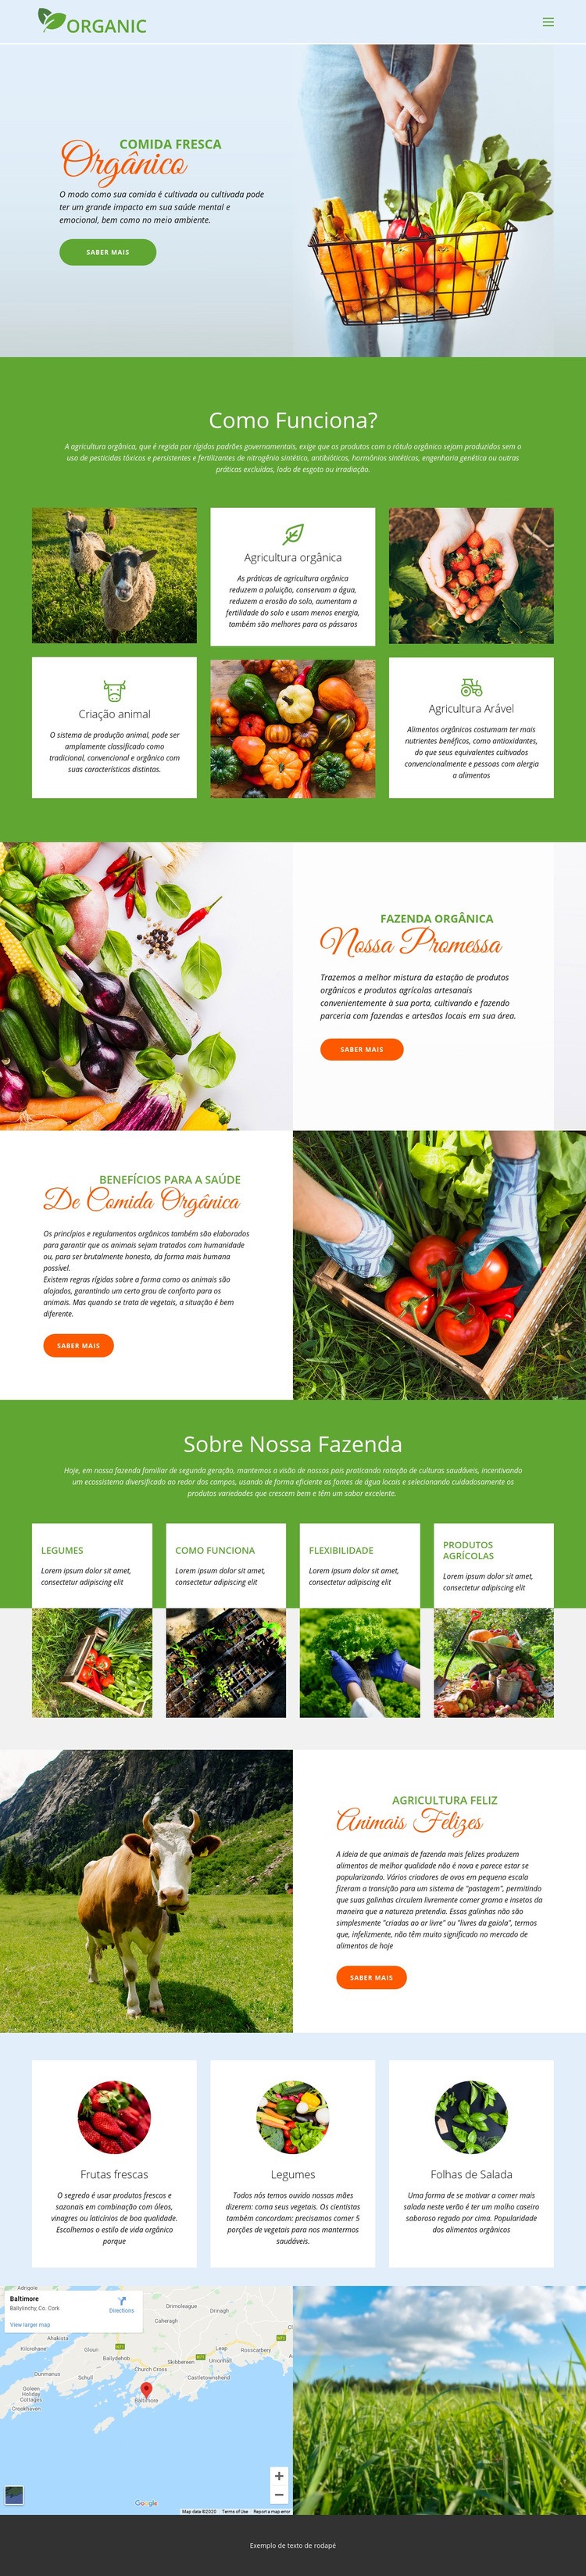 Coma a melhor comida orgânica Modelo HTML